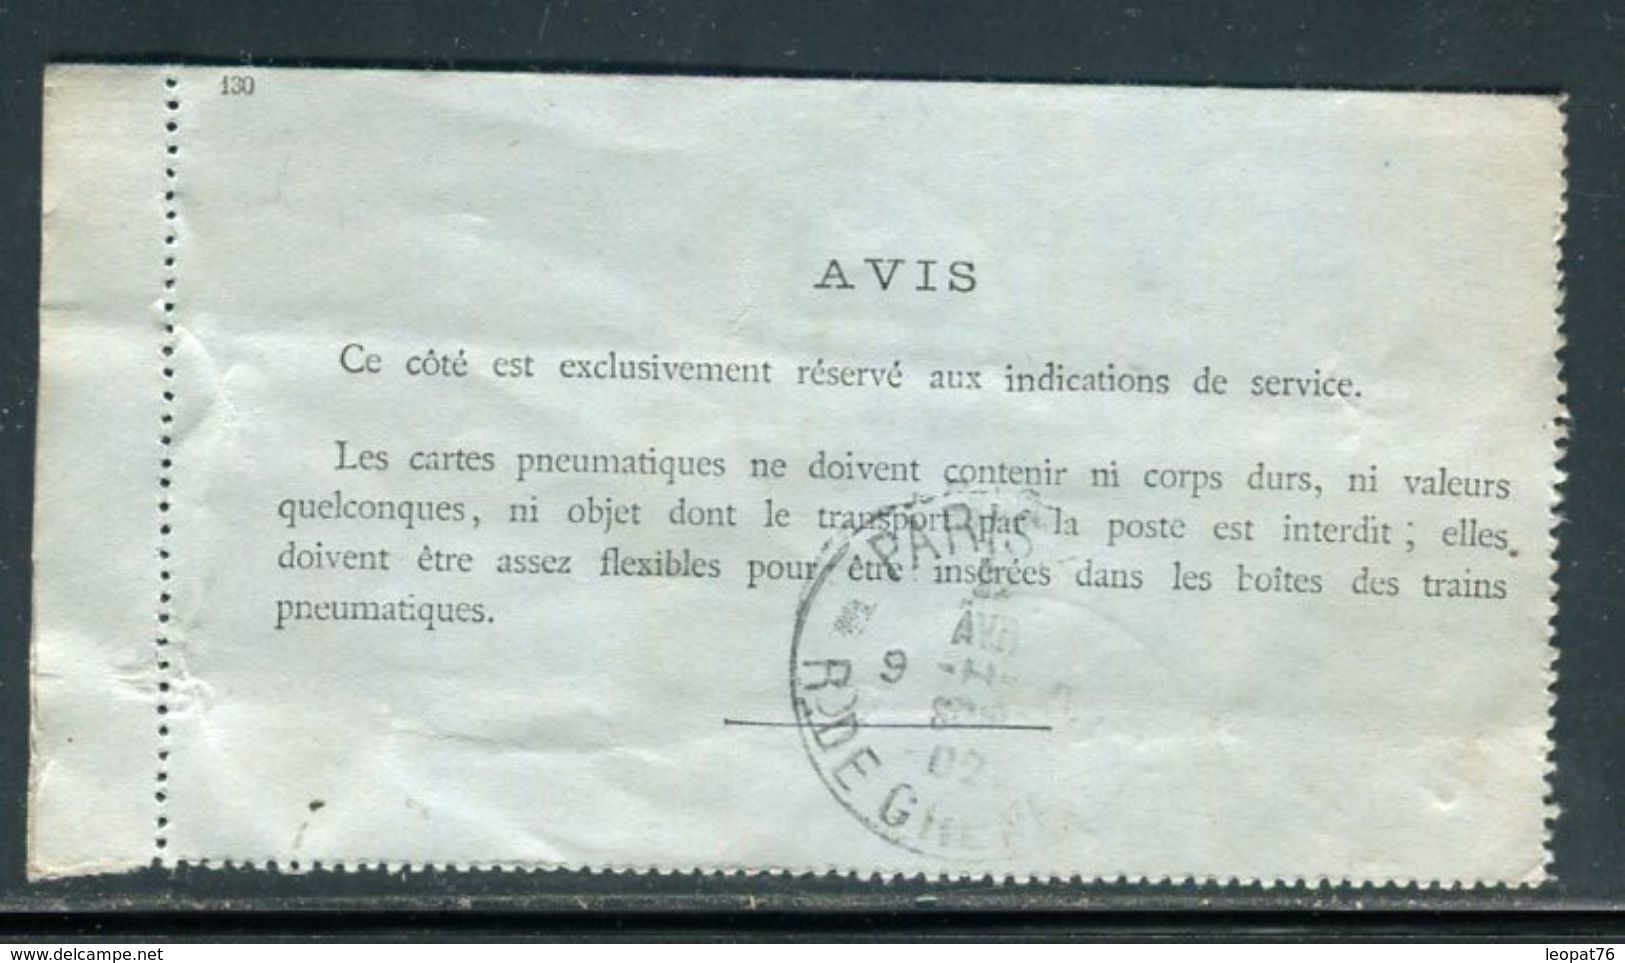 Carte Lettre Pneumatique Type Chaplain 50c Noir (date 130 ) Surchargé Sans Barres De Paris En 1902 - Ref M27 - Pneumatische Post